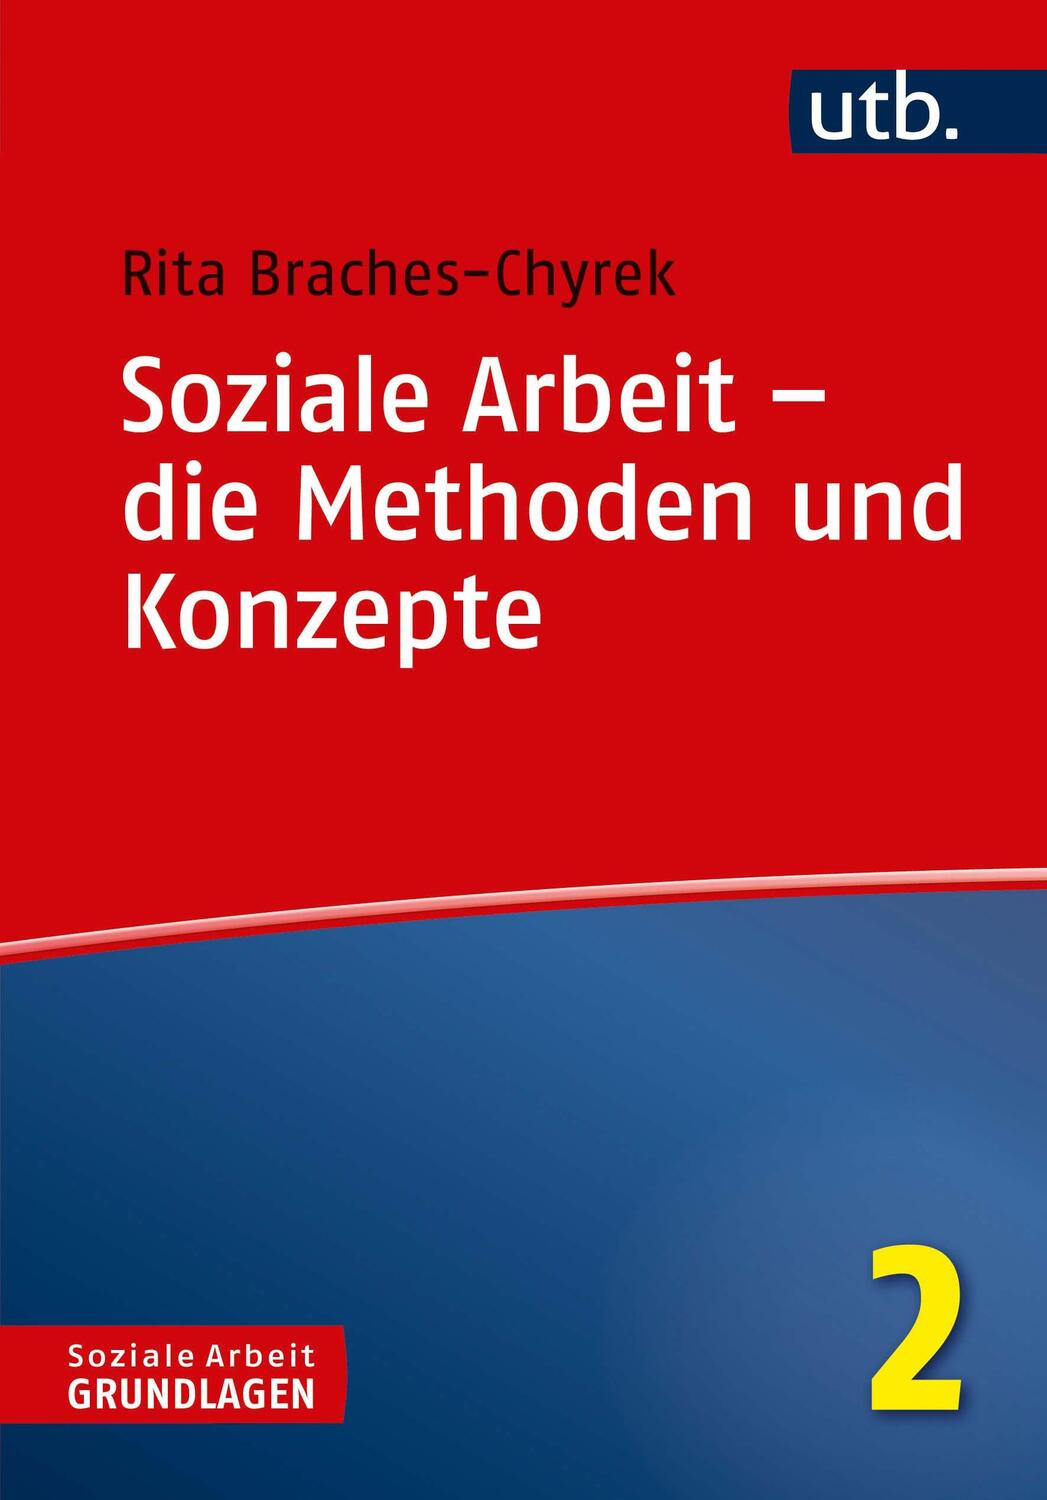 Cover: 9783825247720 | Soziale Arbeit - die Methoden und Konzepte | Rita Braches-Chyrek | UTB